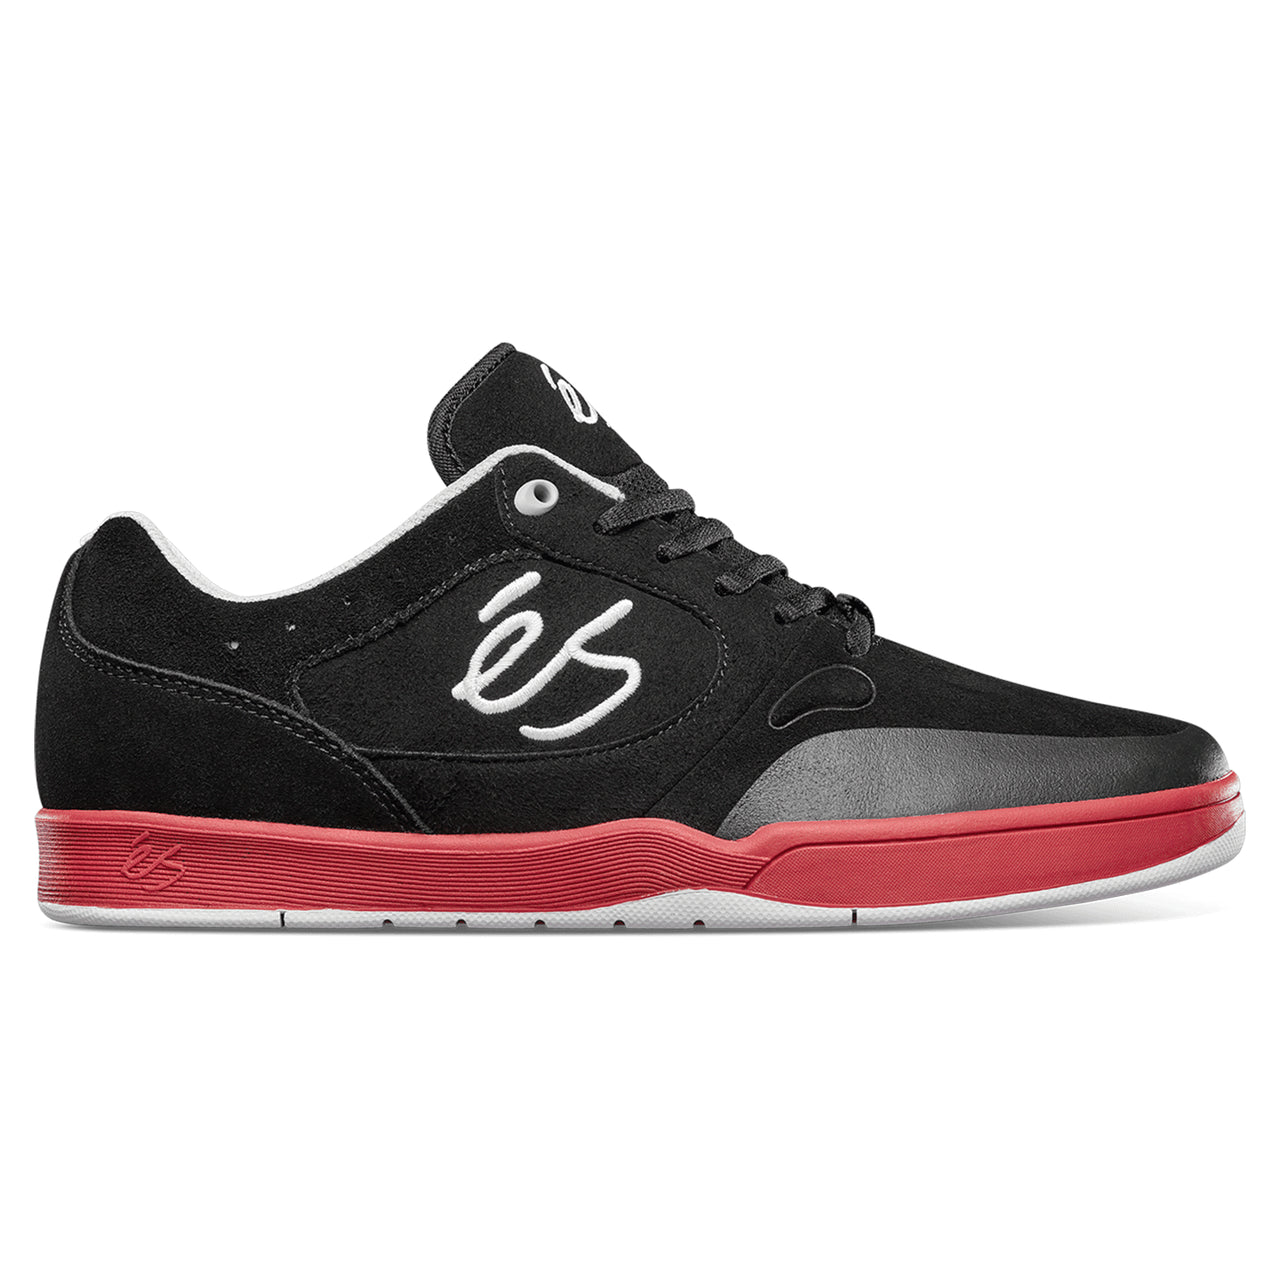 eS Skateboarding Swift 1.5 Black / Red Skate Shoes